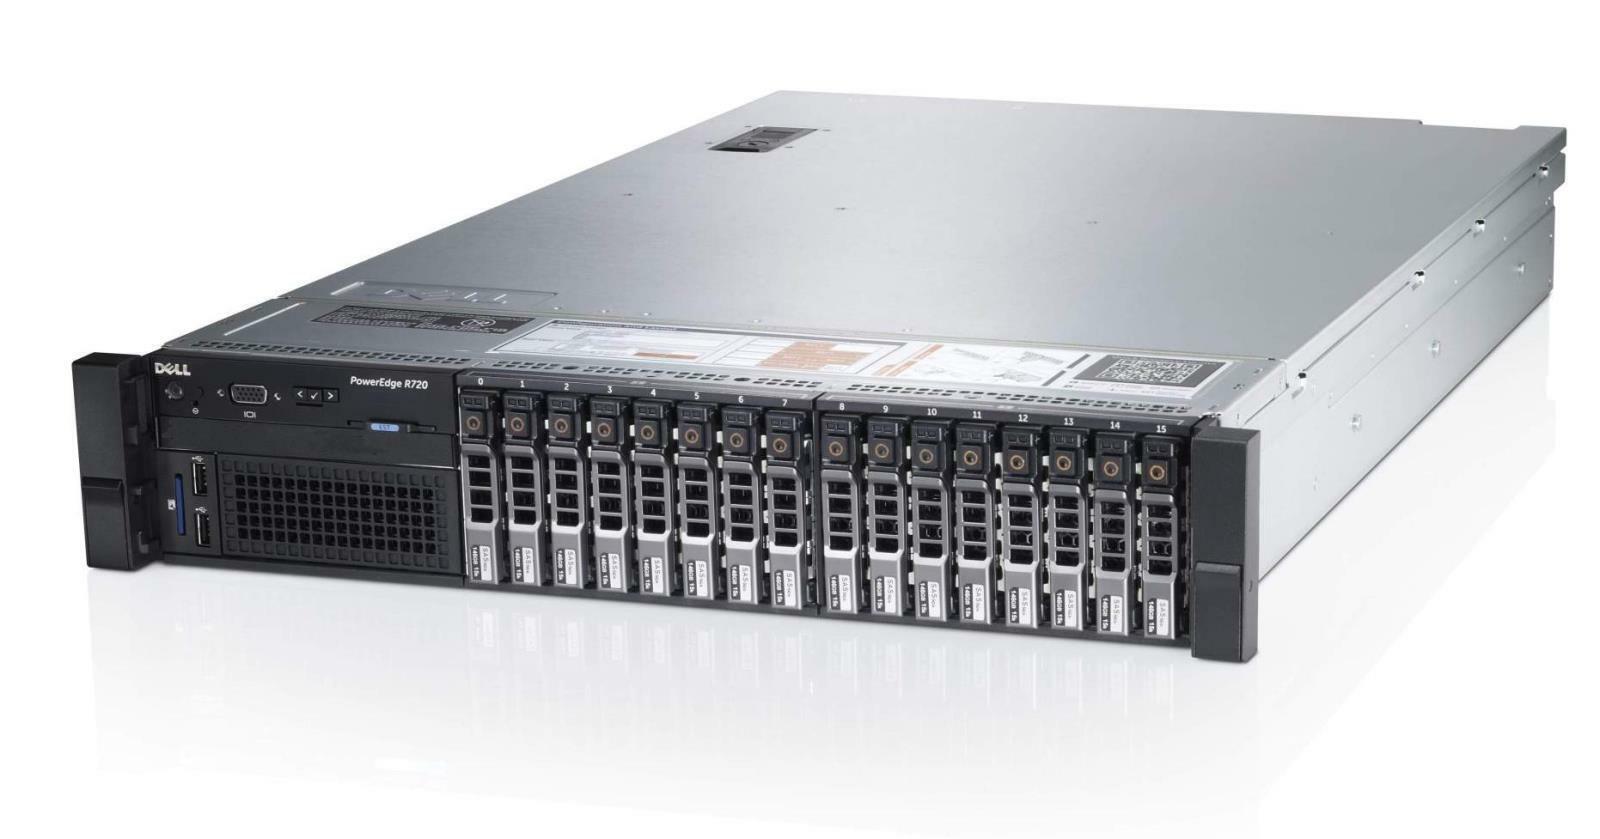 DELL PowerEdge R720 Server 2×6-Core E5-2630v2 Xeon 2.6GHz 96GB RAM 16×900GB RAID